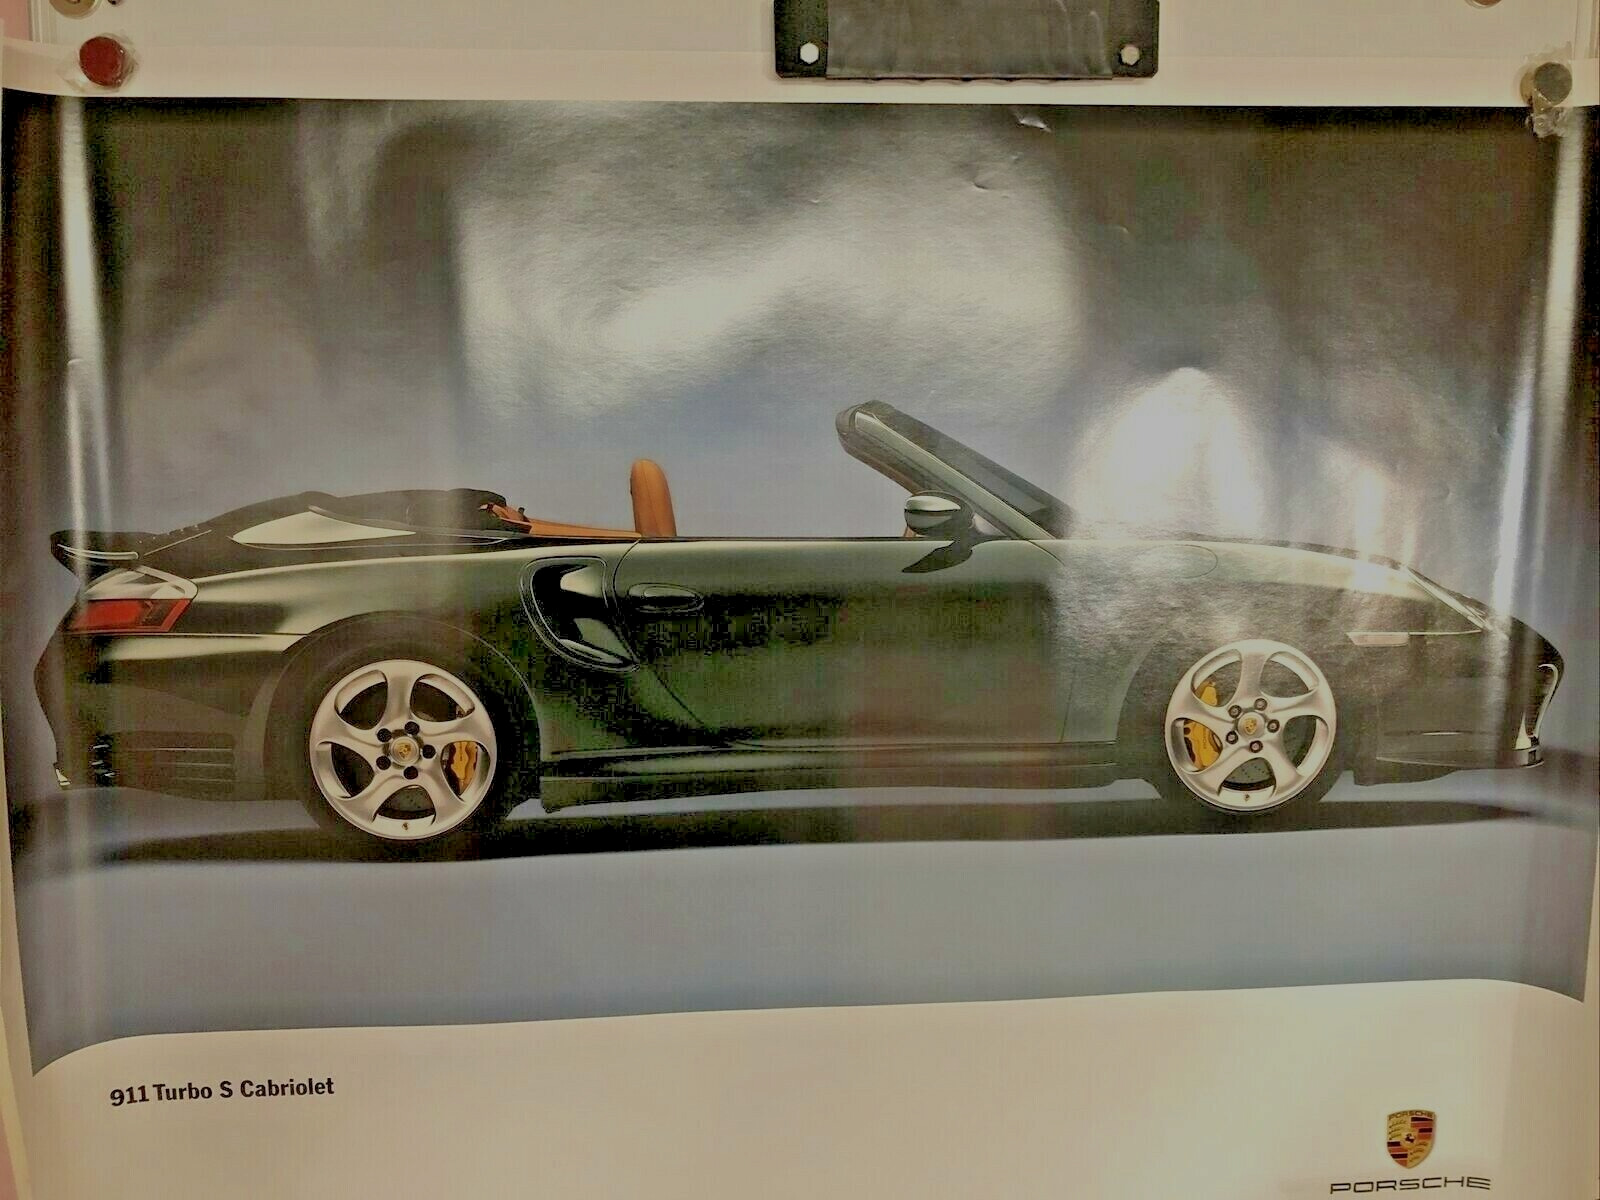 RARE AWESOME FACTORY Original Porsche Poster 2004  911 Turbo S Cabriolet